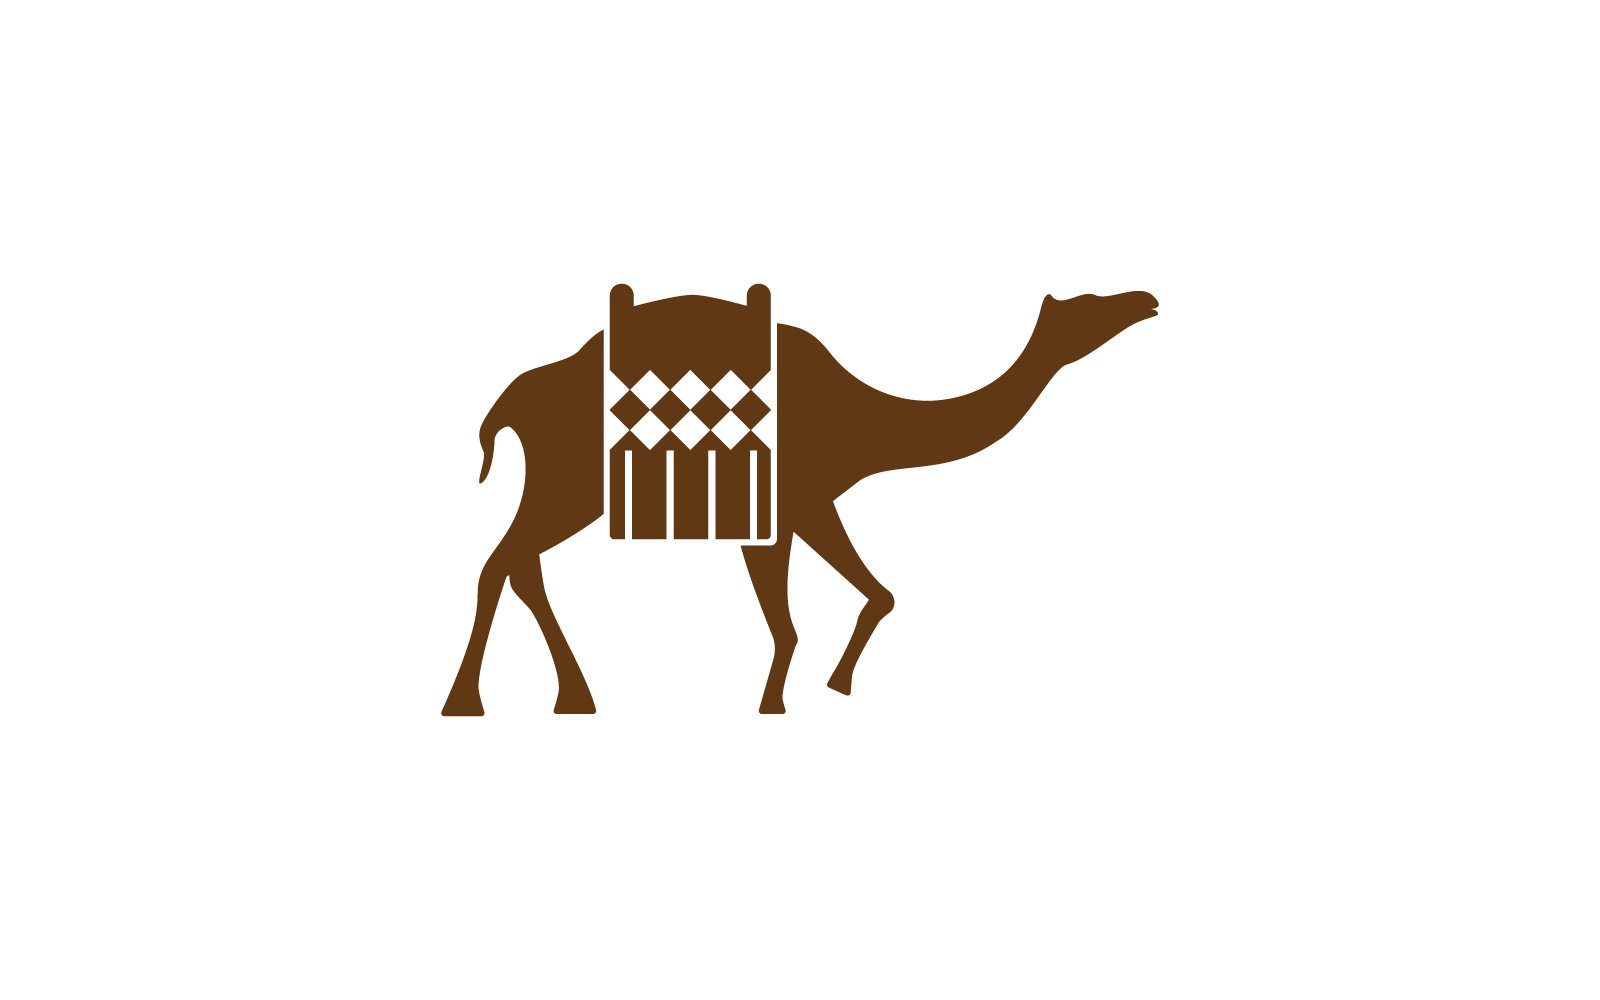 Camel illustration logo icon vector design Logo Template